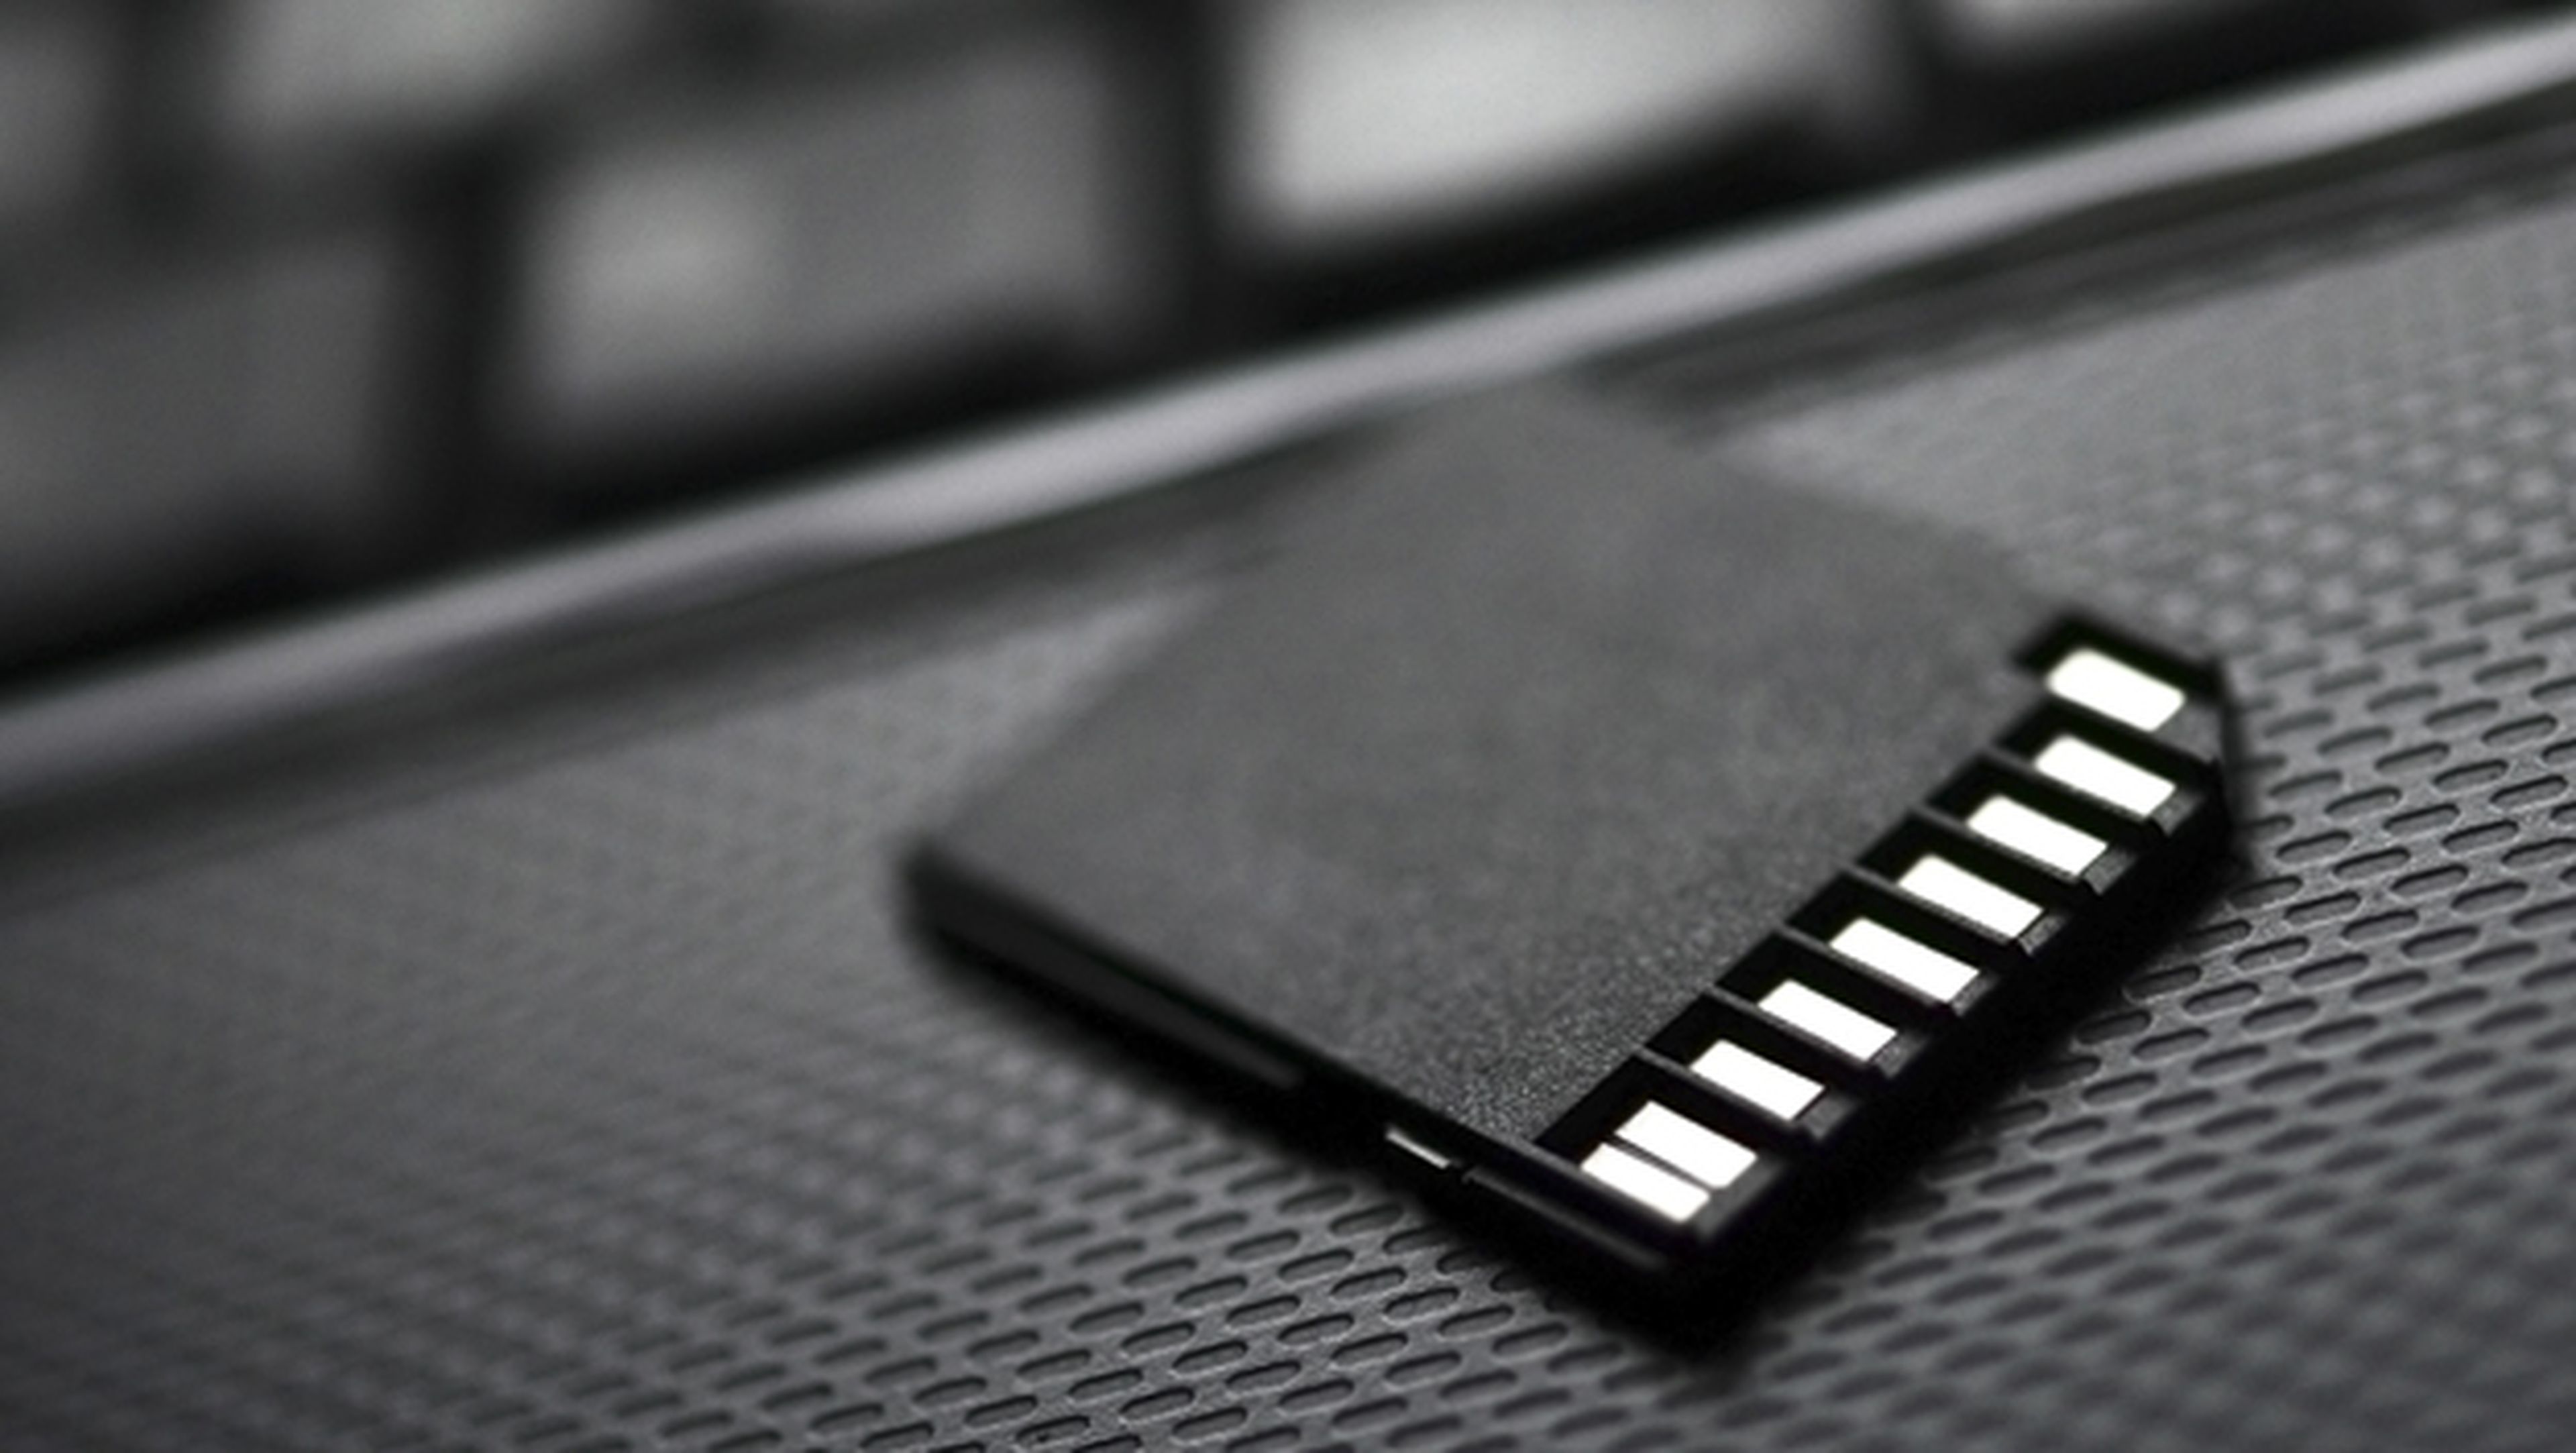 El cuarto deseo: mover la aplicación a la tarjeta microSD